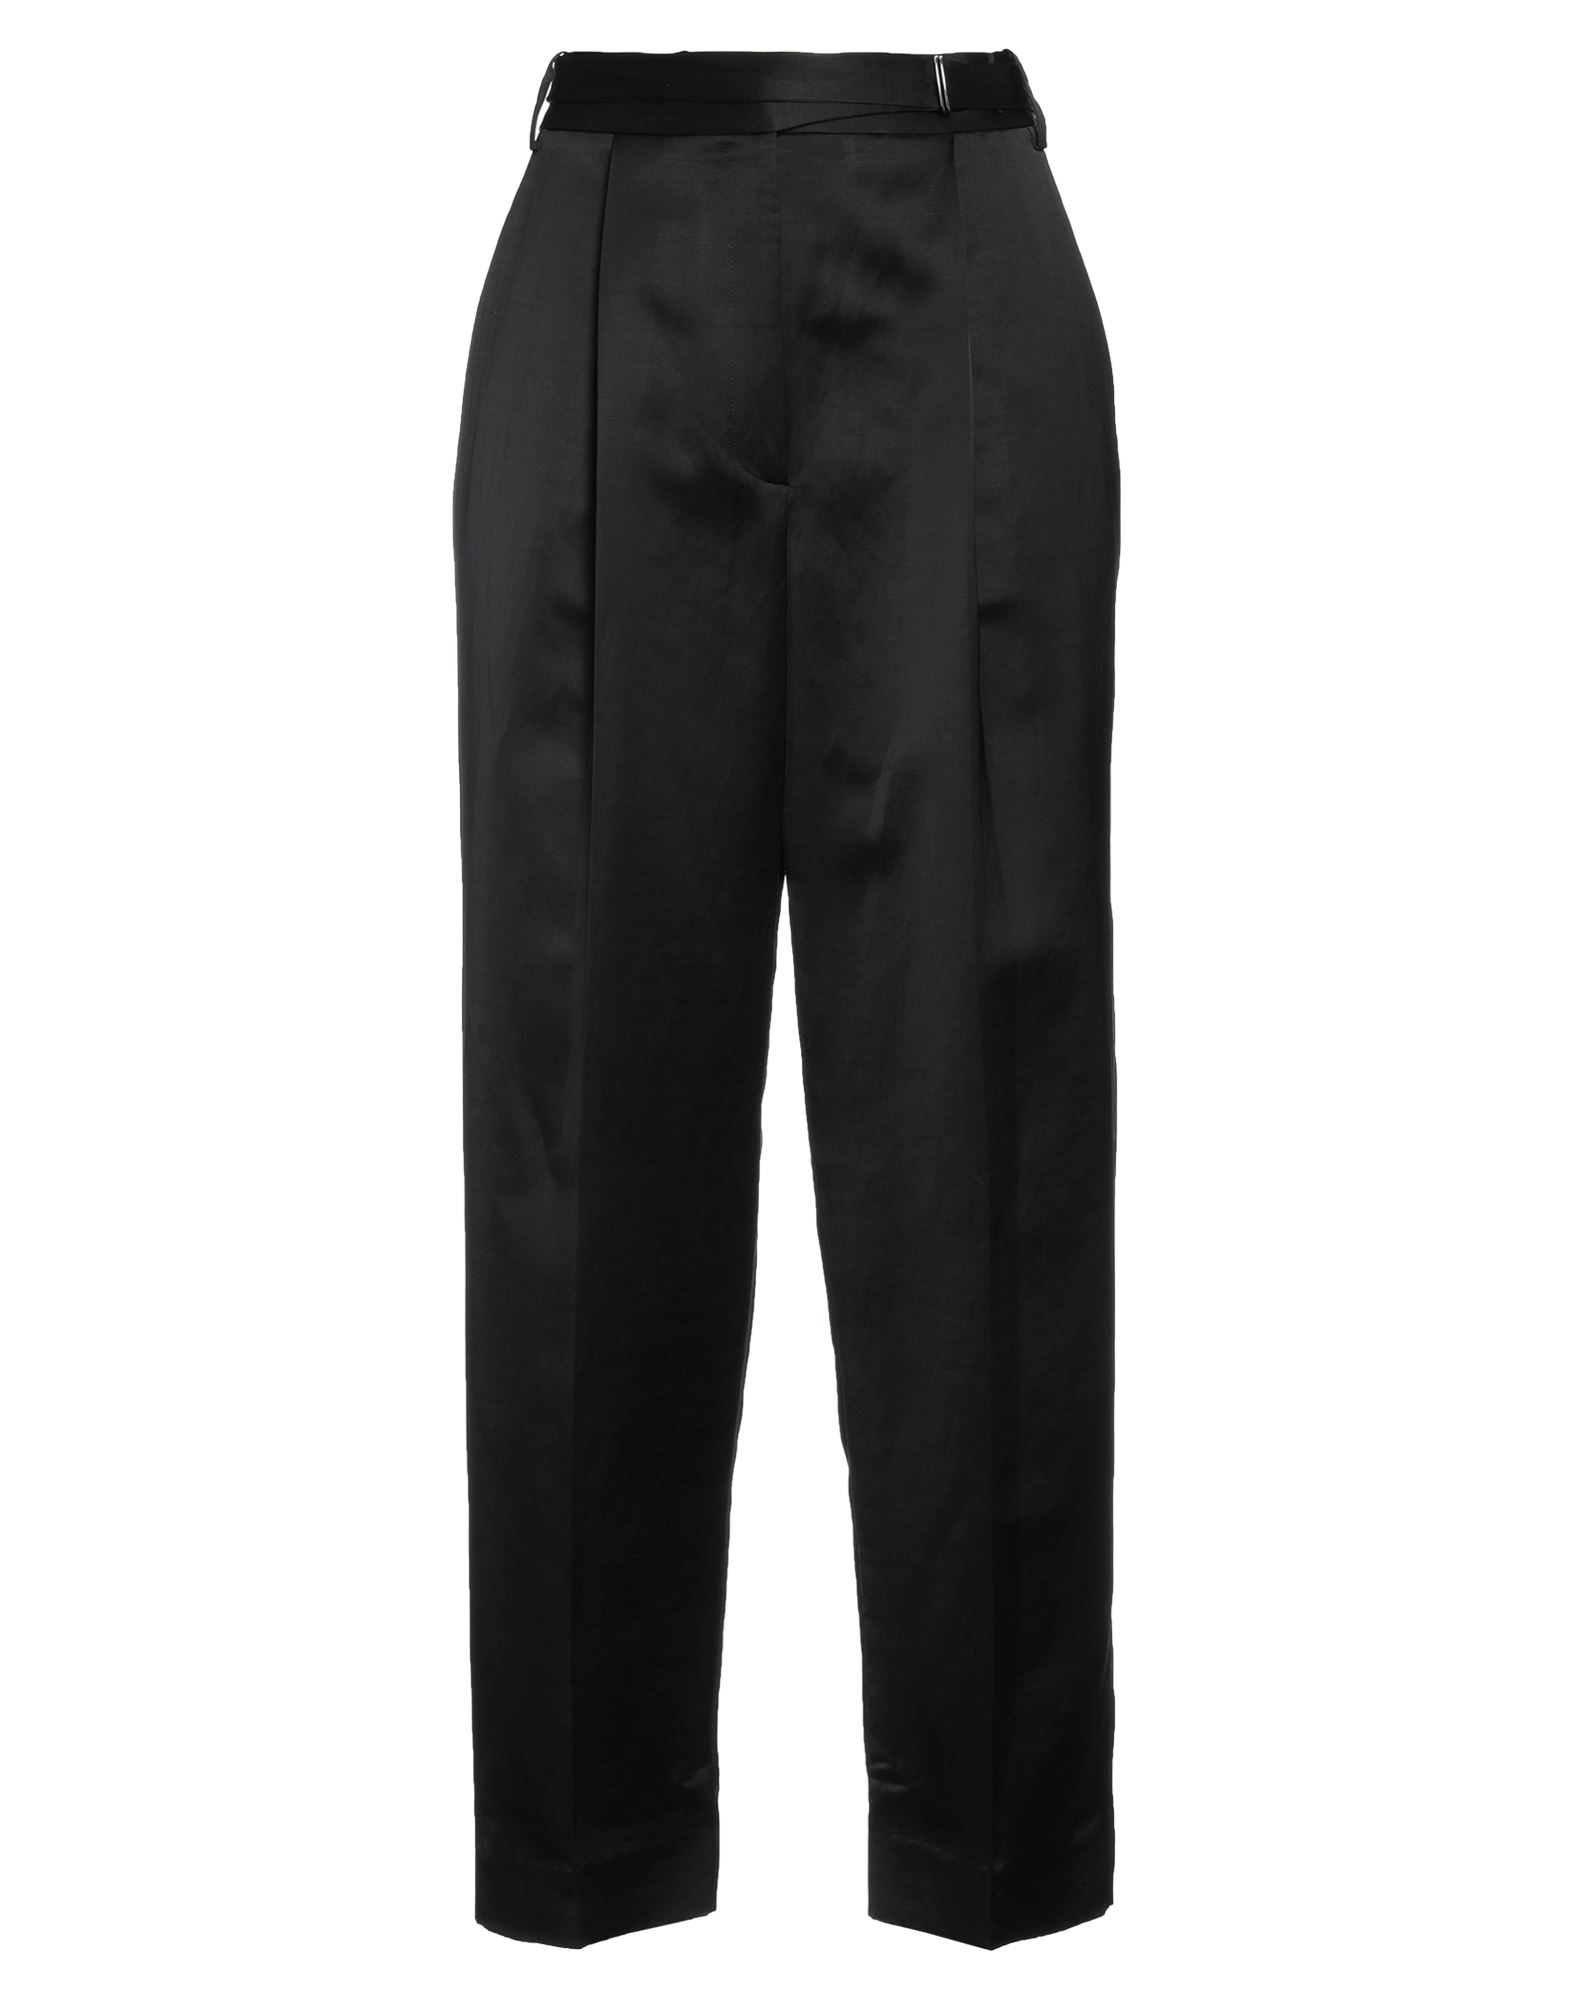 Shop Partow Woman Pants Black Size 8 Viscose, Linen